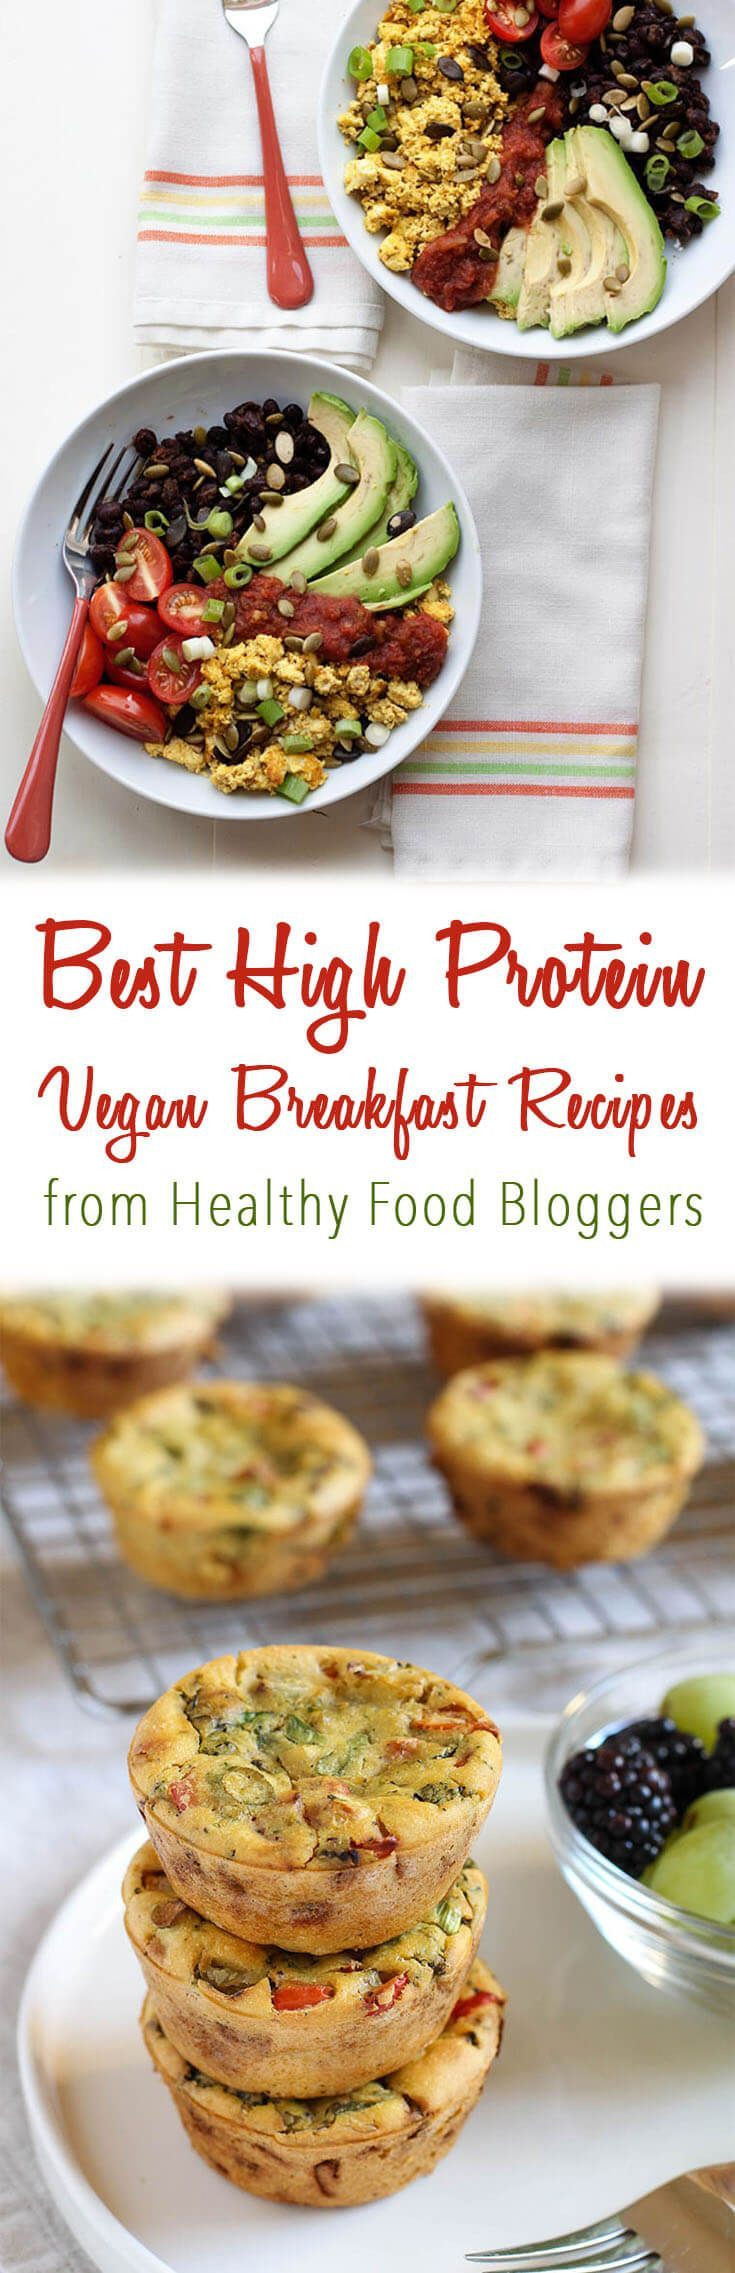 Vegan Protein Breakfast Easy
 I share the best high protein vegan breakfast recipes on